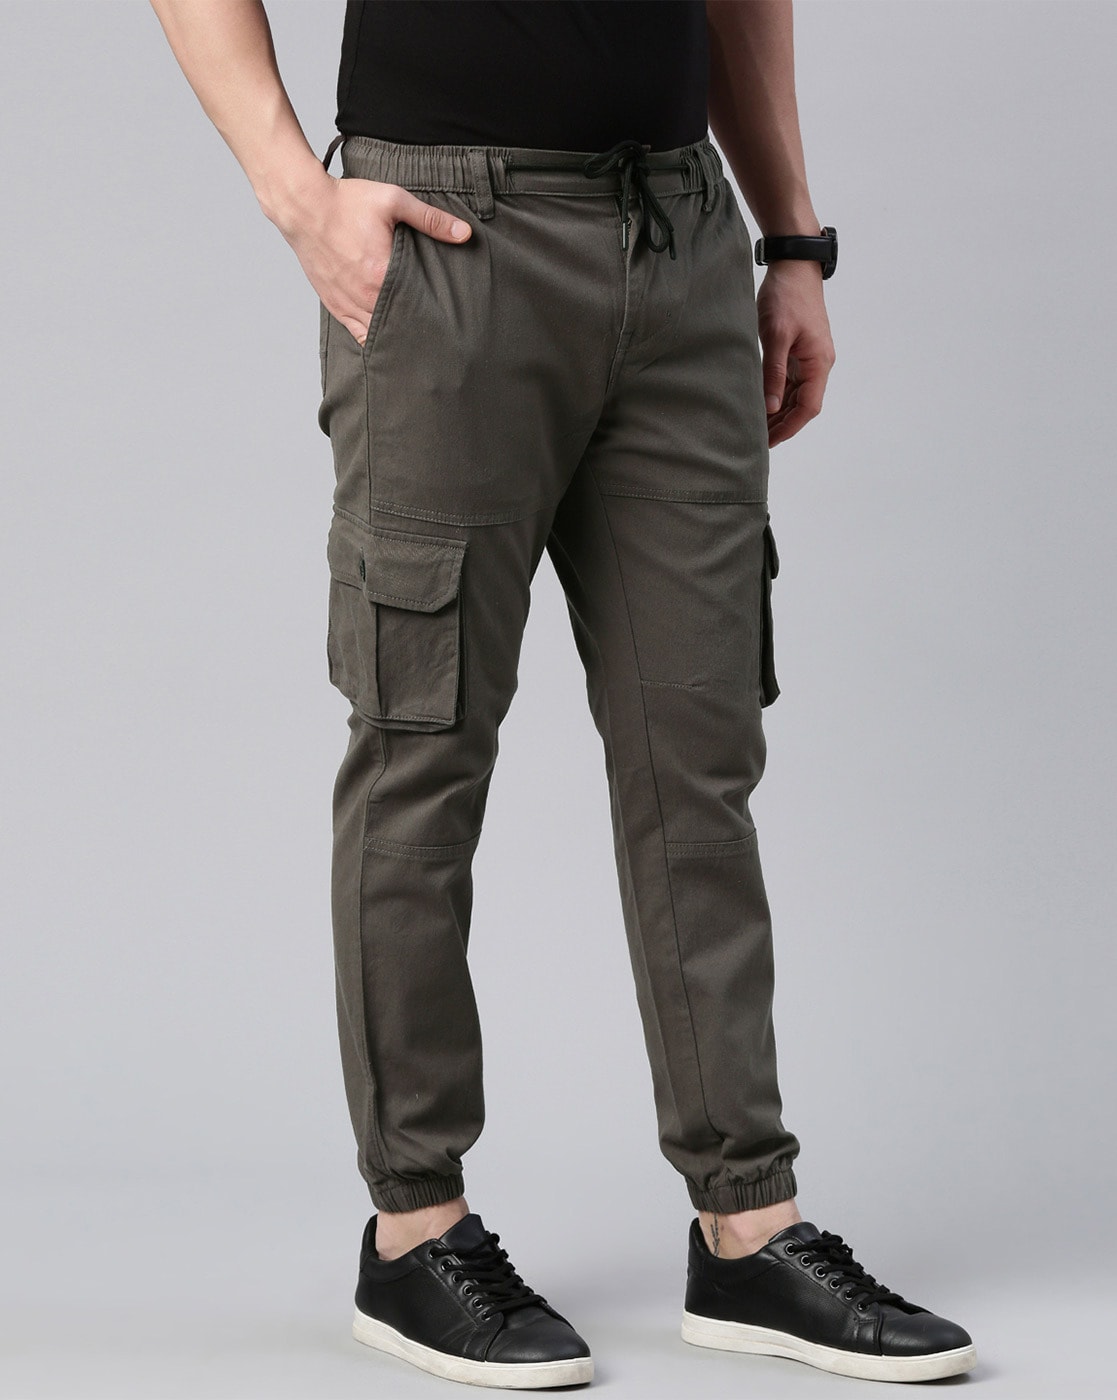 Buy t-base Men's Grey Solid Cargo Pants for Men Online India